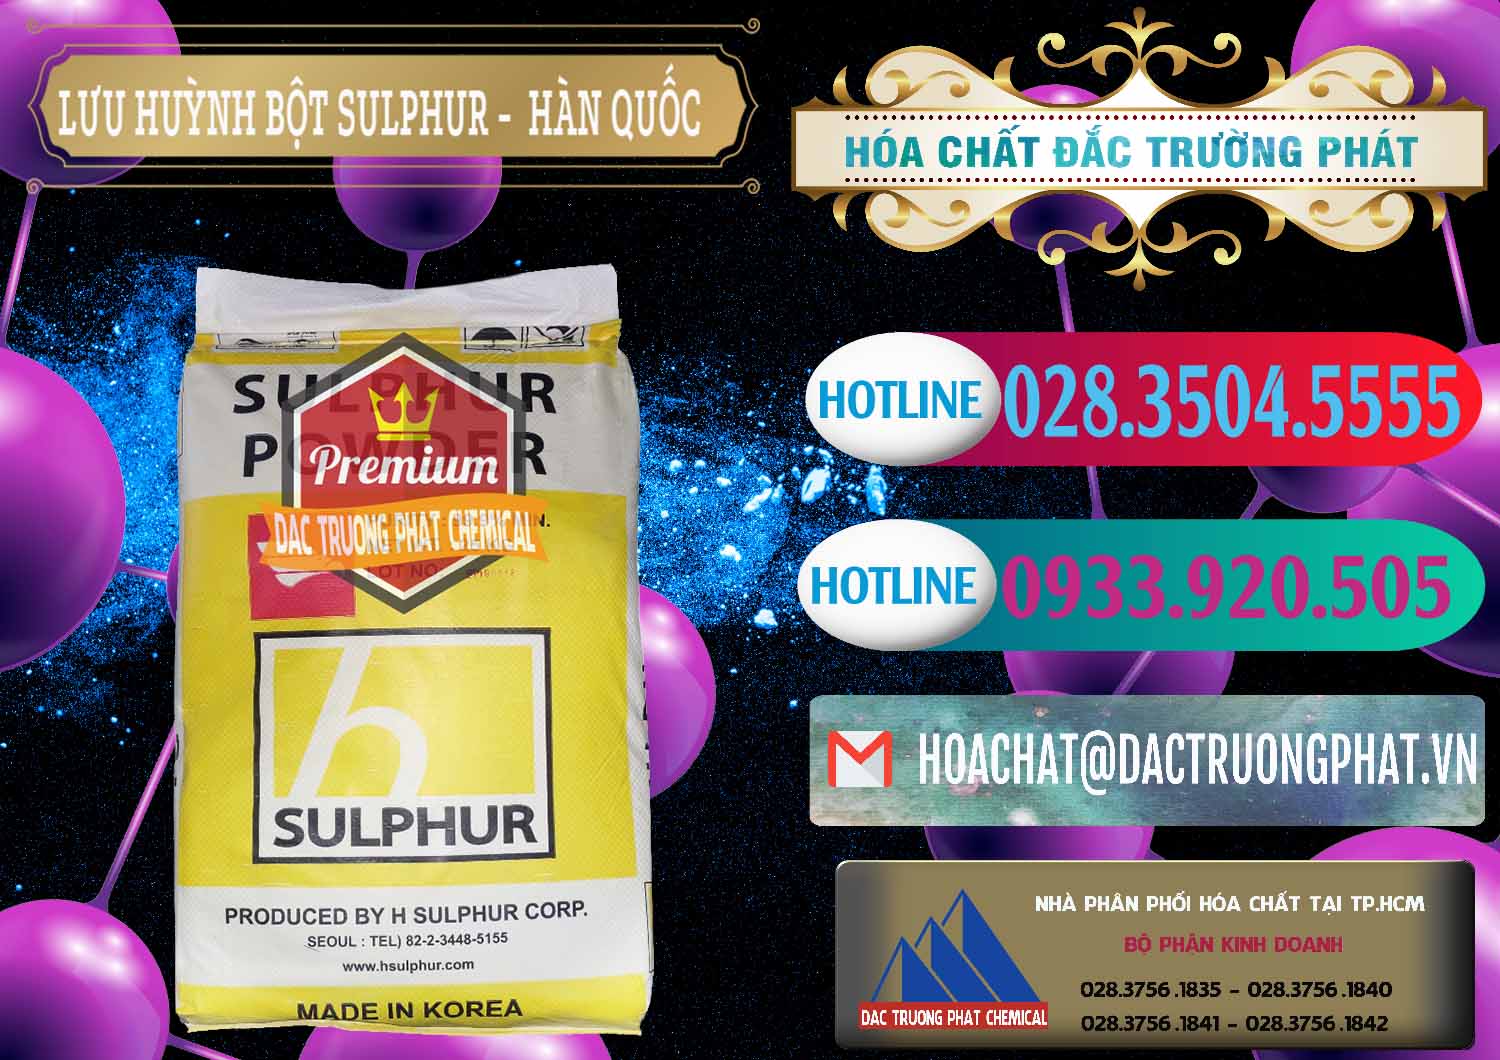 Nhập khẩu và bán Lưu huỳnh Bột - Sulfur Powder ( H Sulfur ) Hàn Quốc Korea - 0199 - Công ty kinh doanh & cung cấp hóa chất tại TP.HCM - truongphat.vn